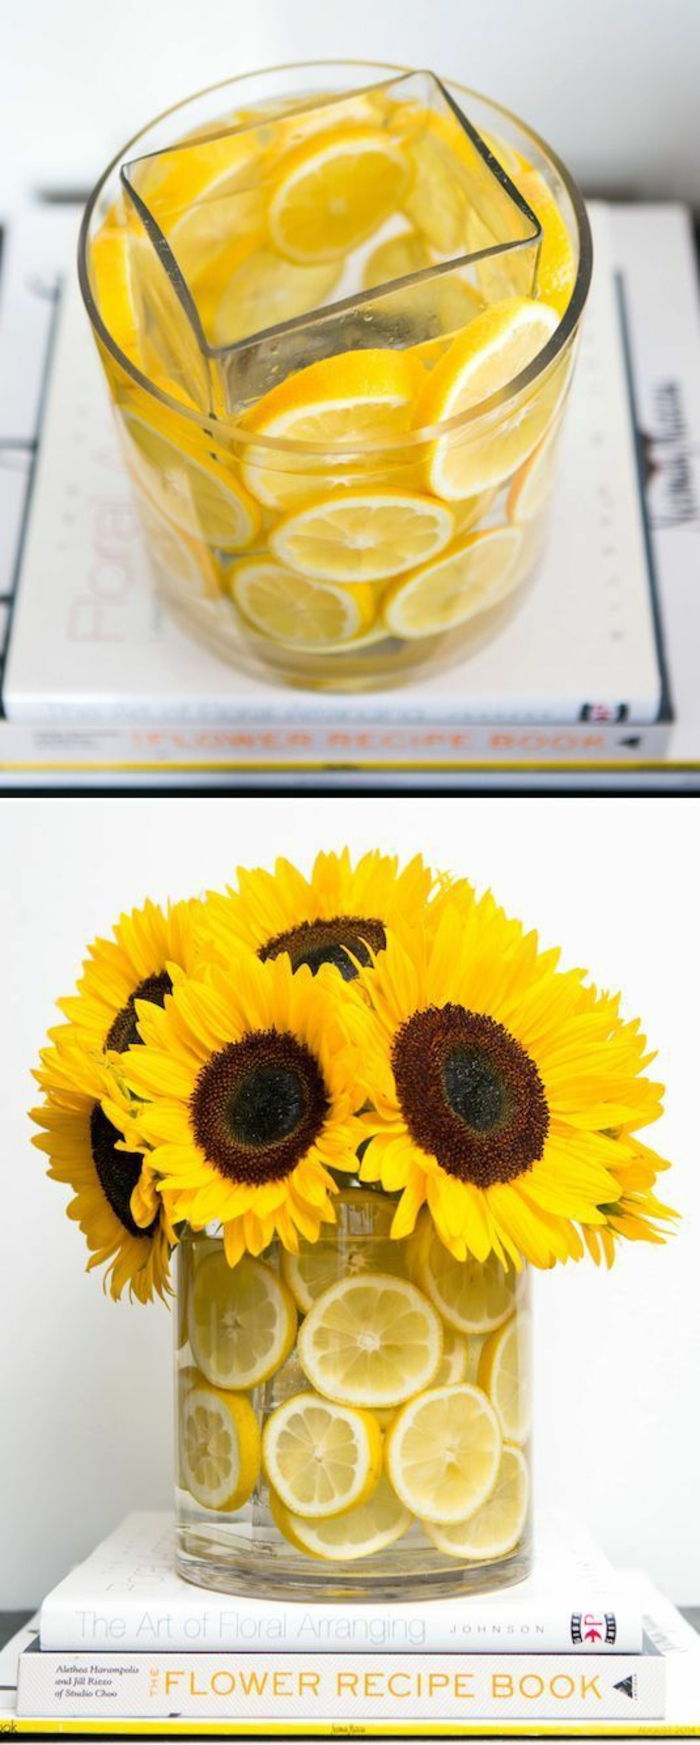 Vaso di vetro decorato con scorza di limone, fiori gialli, girasoli